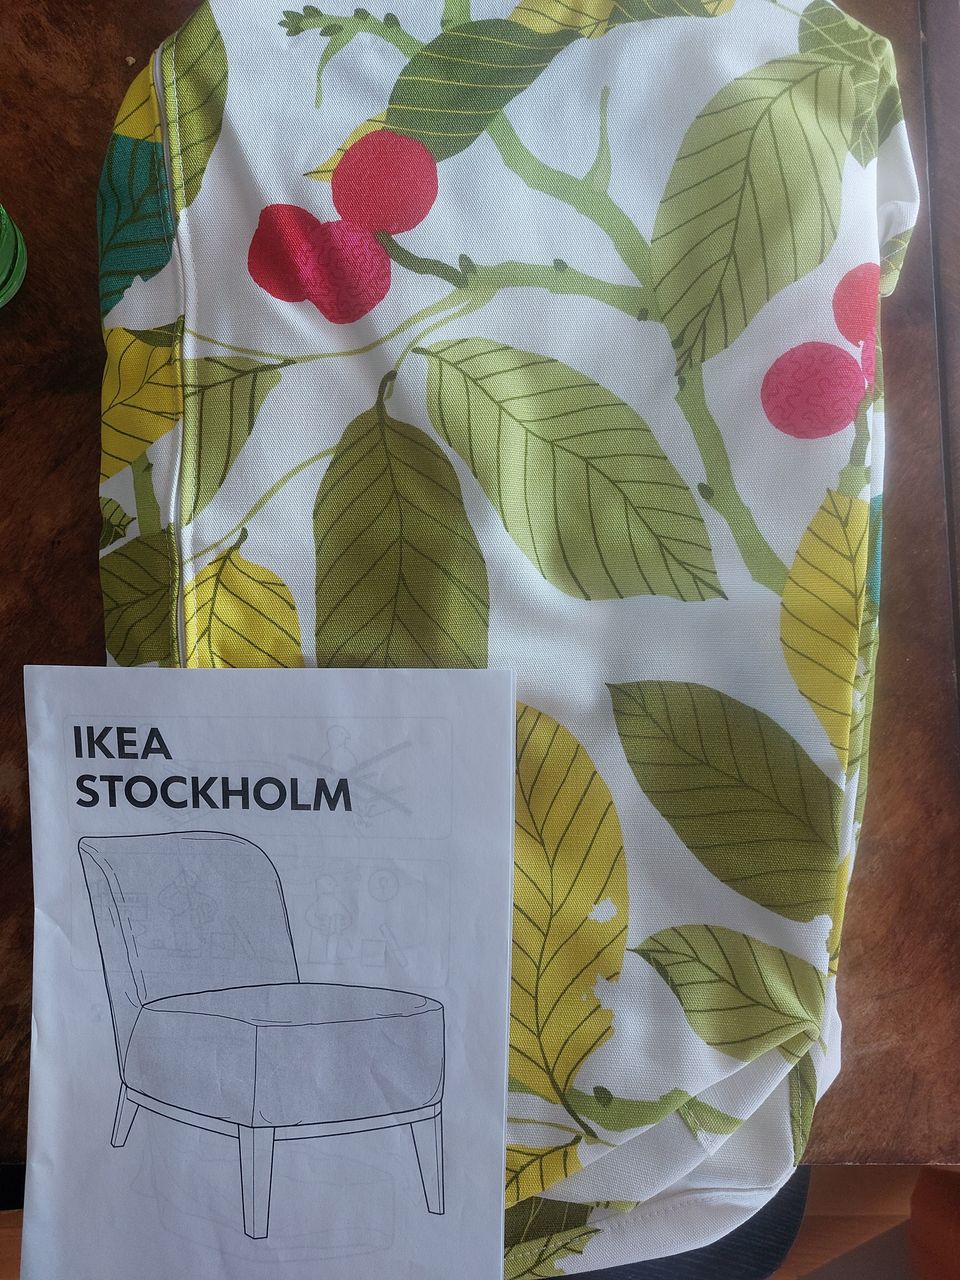 Stockholm (Ikea) nojatuolin päällinen